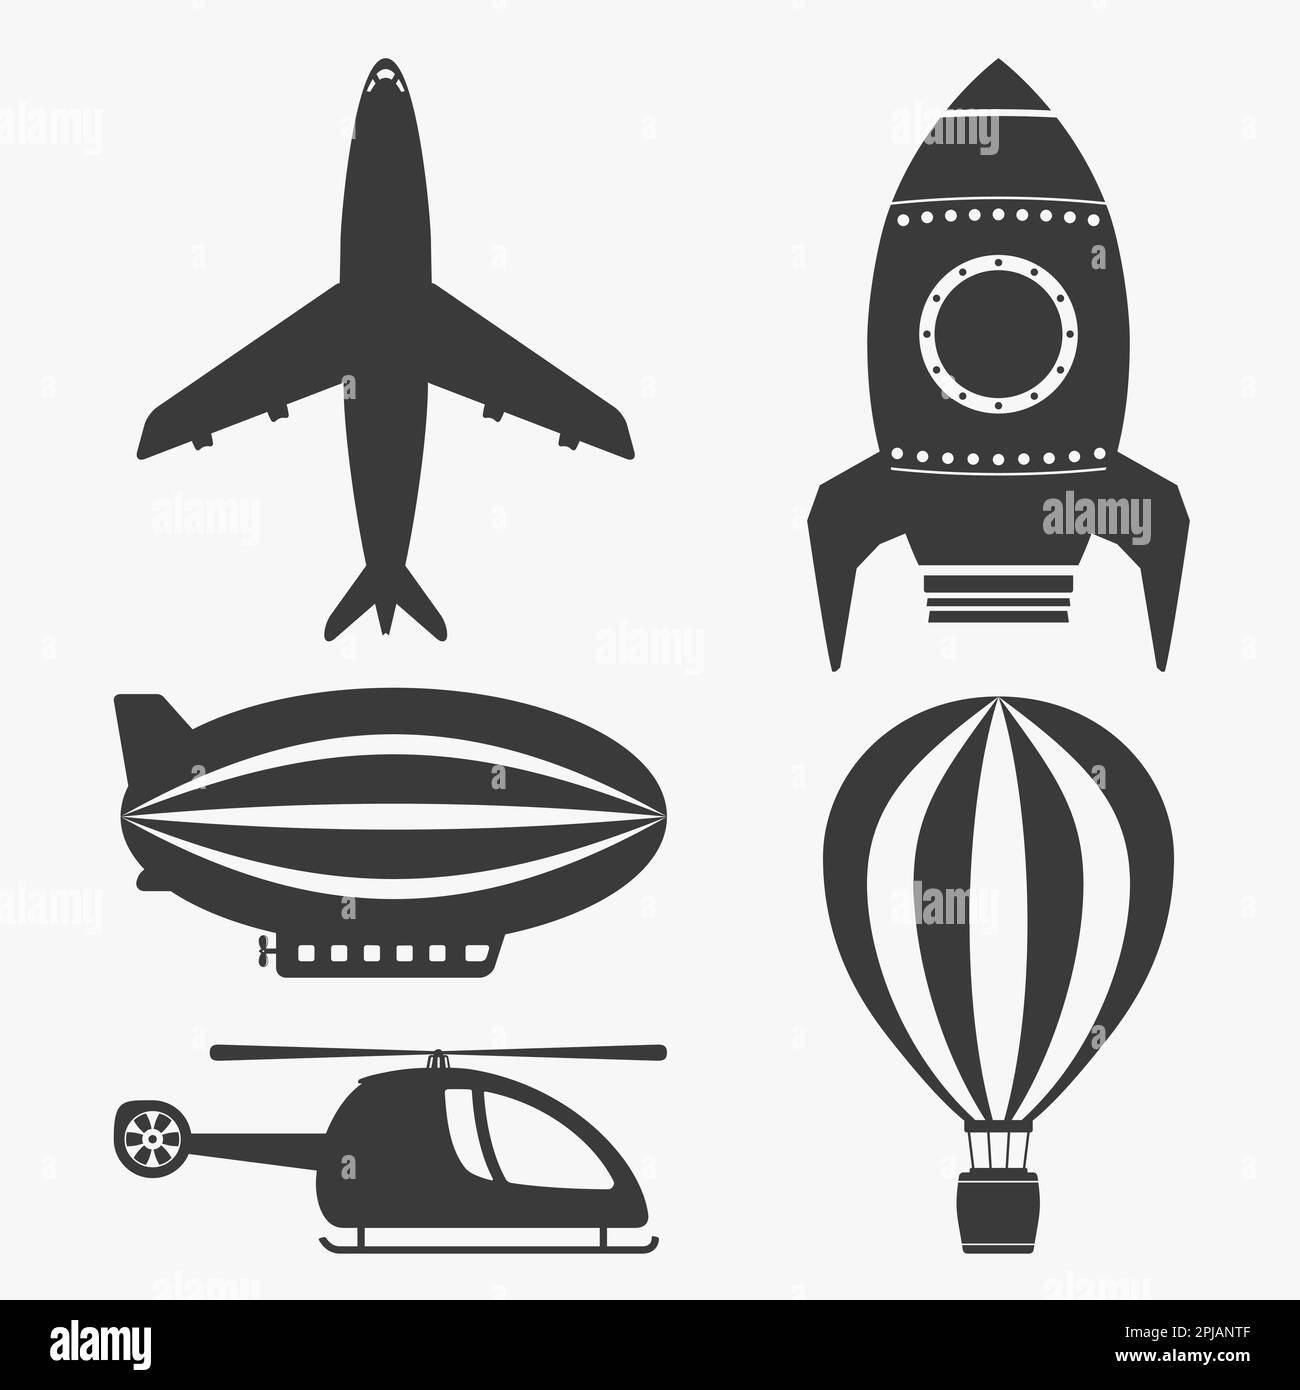 Symbole für den Luftverkehr, Hubschrauber, Flugzeug, Heißluftballon, Luftschiff und Rakete, vektor EPS10-Abbildung Stock Vektor